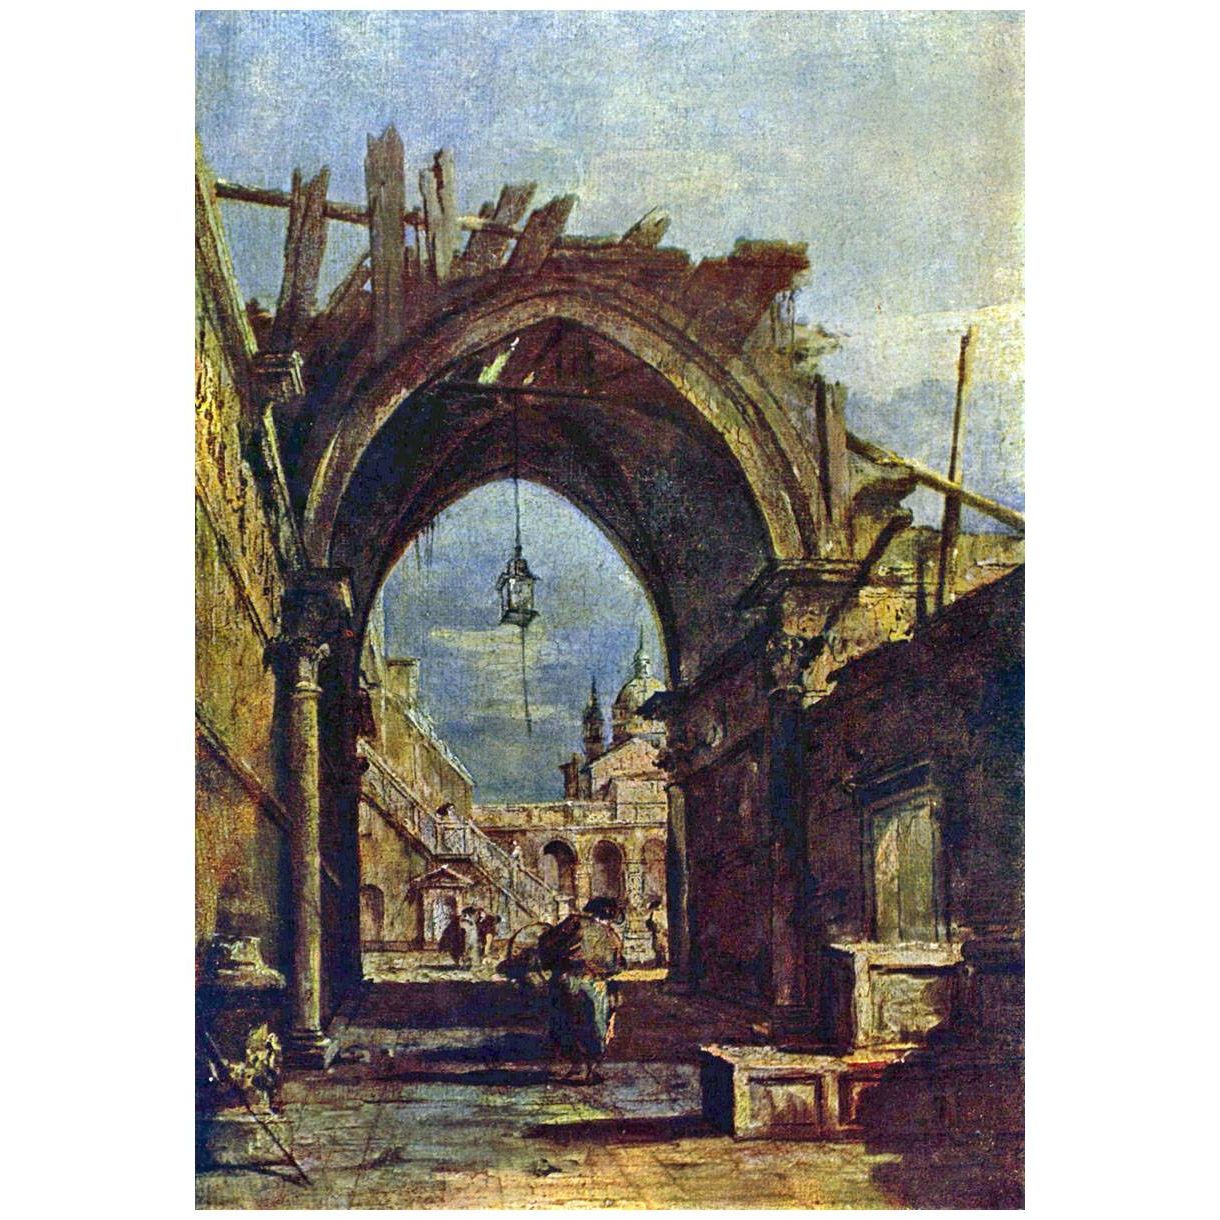 Francesco Guardi. Fantasia architettonica con rovine gotiche. 1780-1885. Pushkin Museum